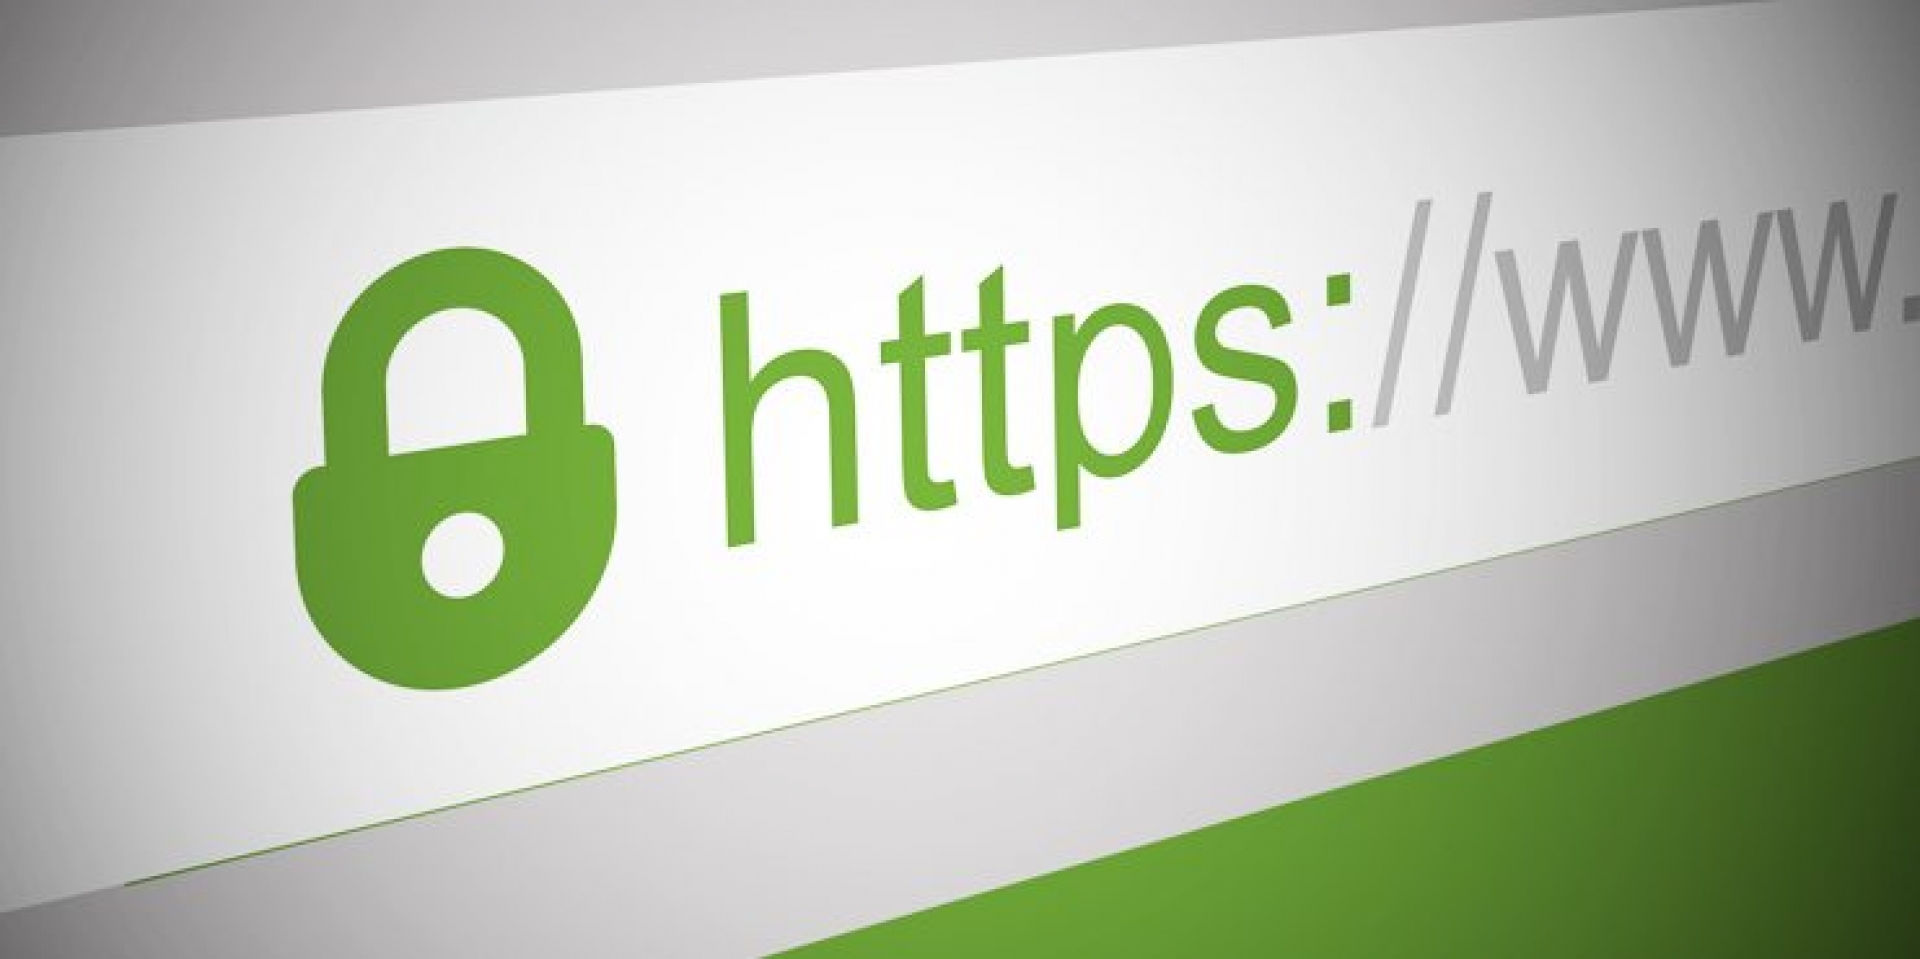 EPİAŞ SSL sertifikasının yenilenme adımlarını duyurdu